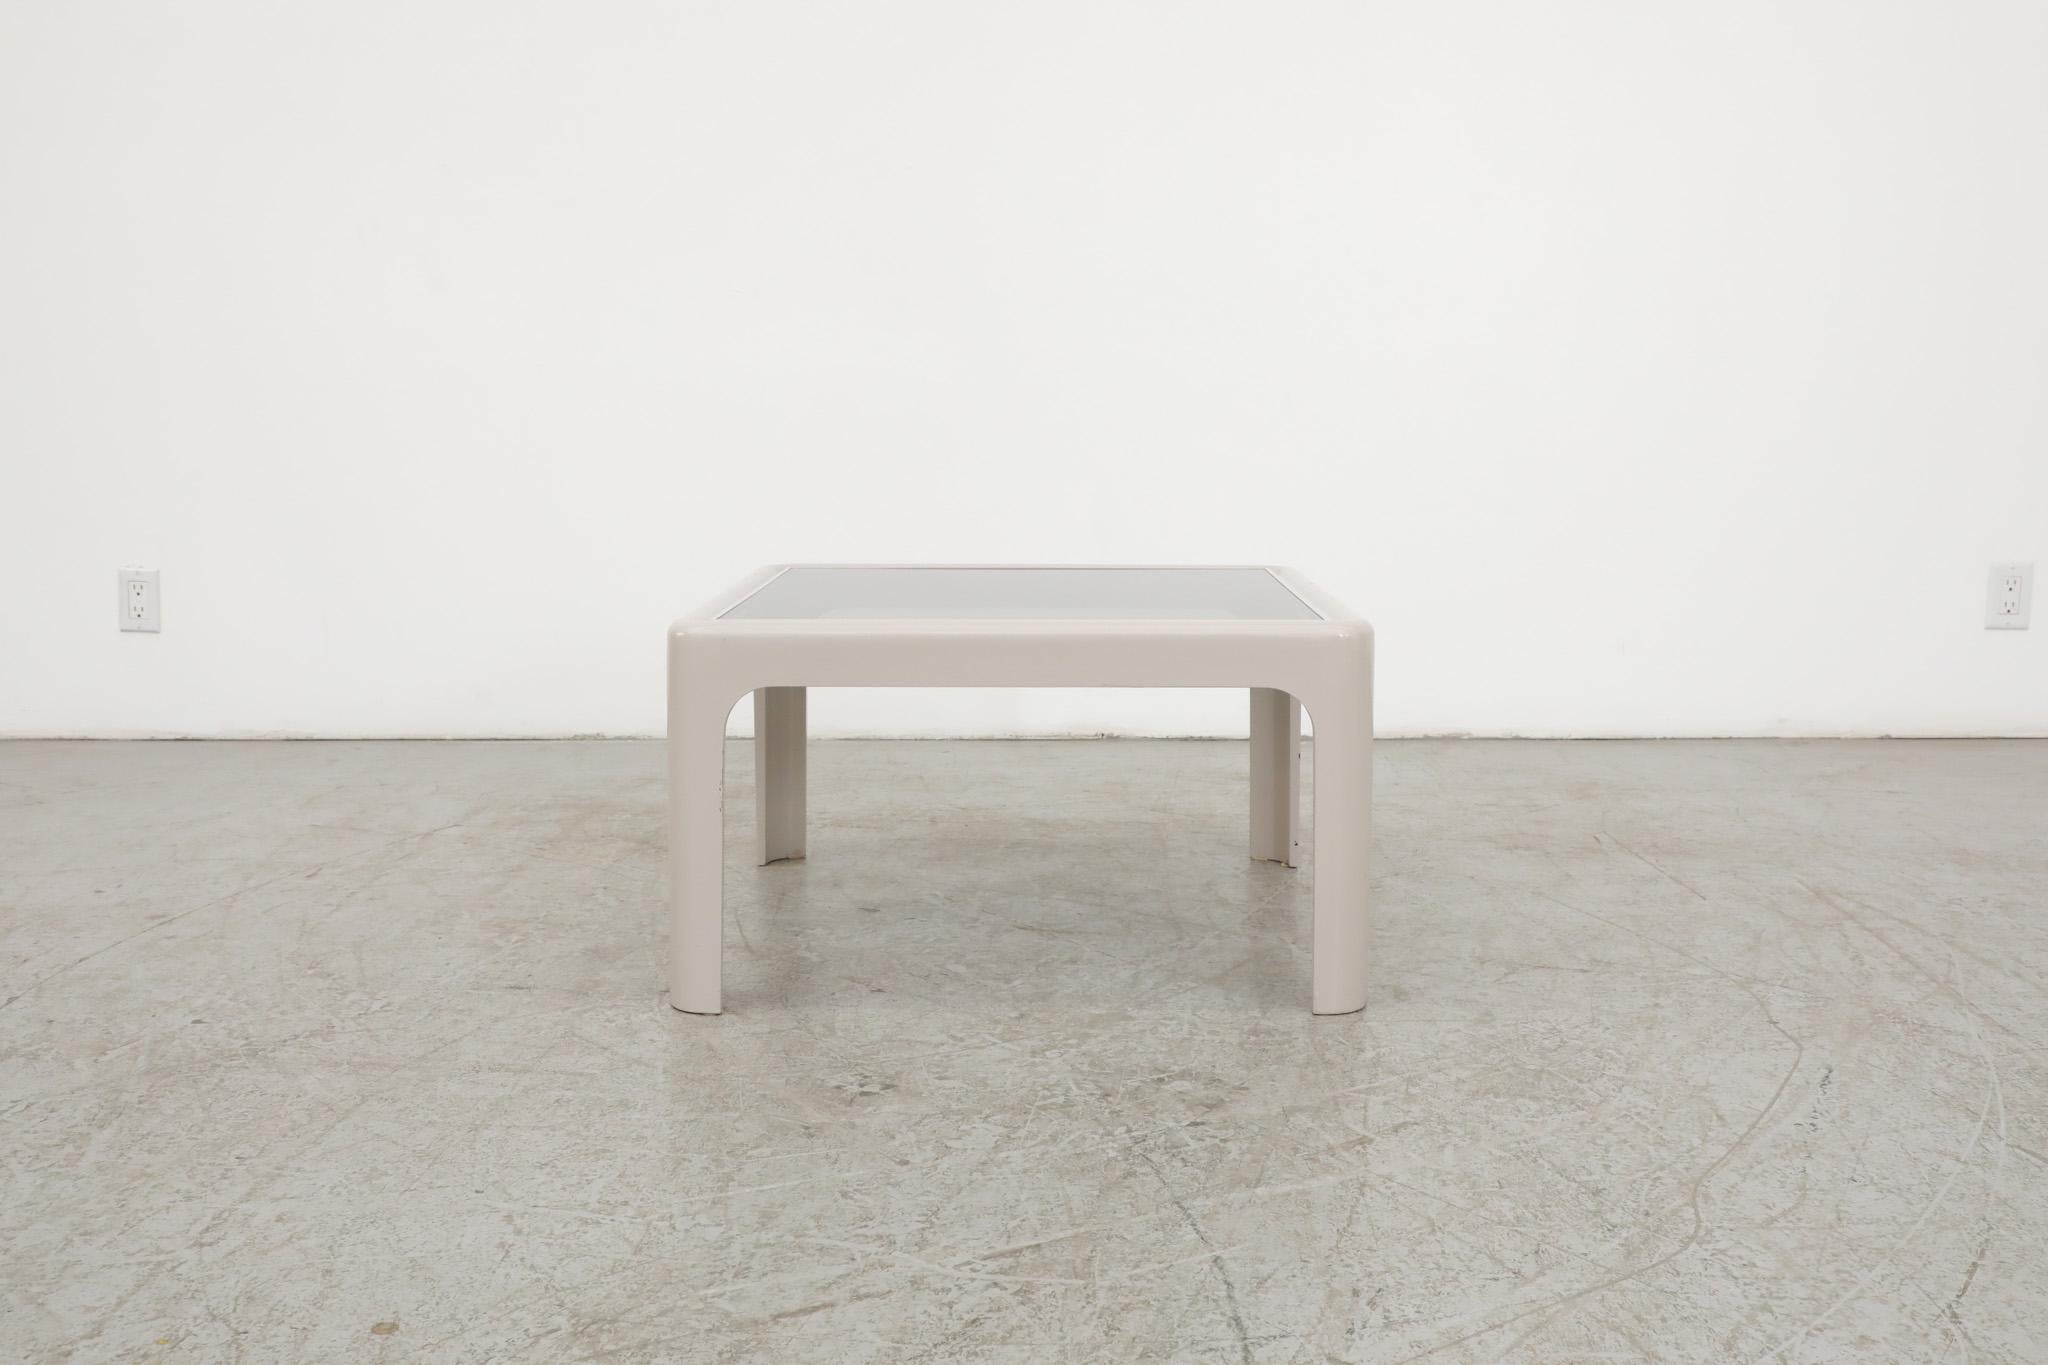 Poschinger pur-möbel 1970 Table d'appoint ou table basse de style Mario Bellini, gris pâle, avec un plateau en verre bronzé et une structure en composite moulé. En état d'origine avec une usure visible, y compris quelques ébréchures sur le cadre et